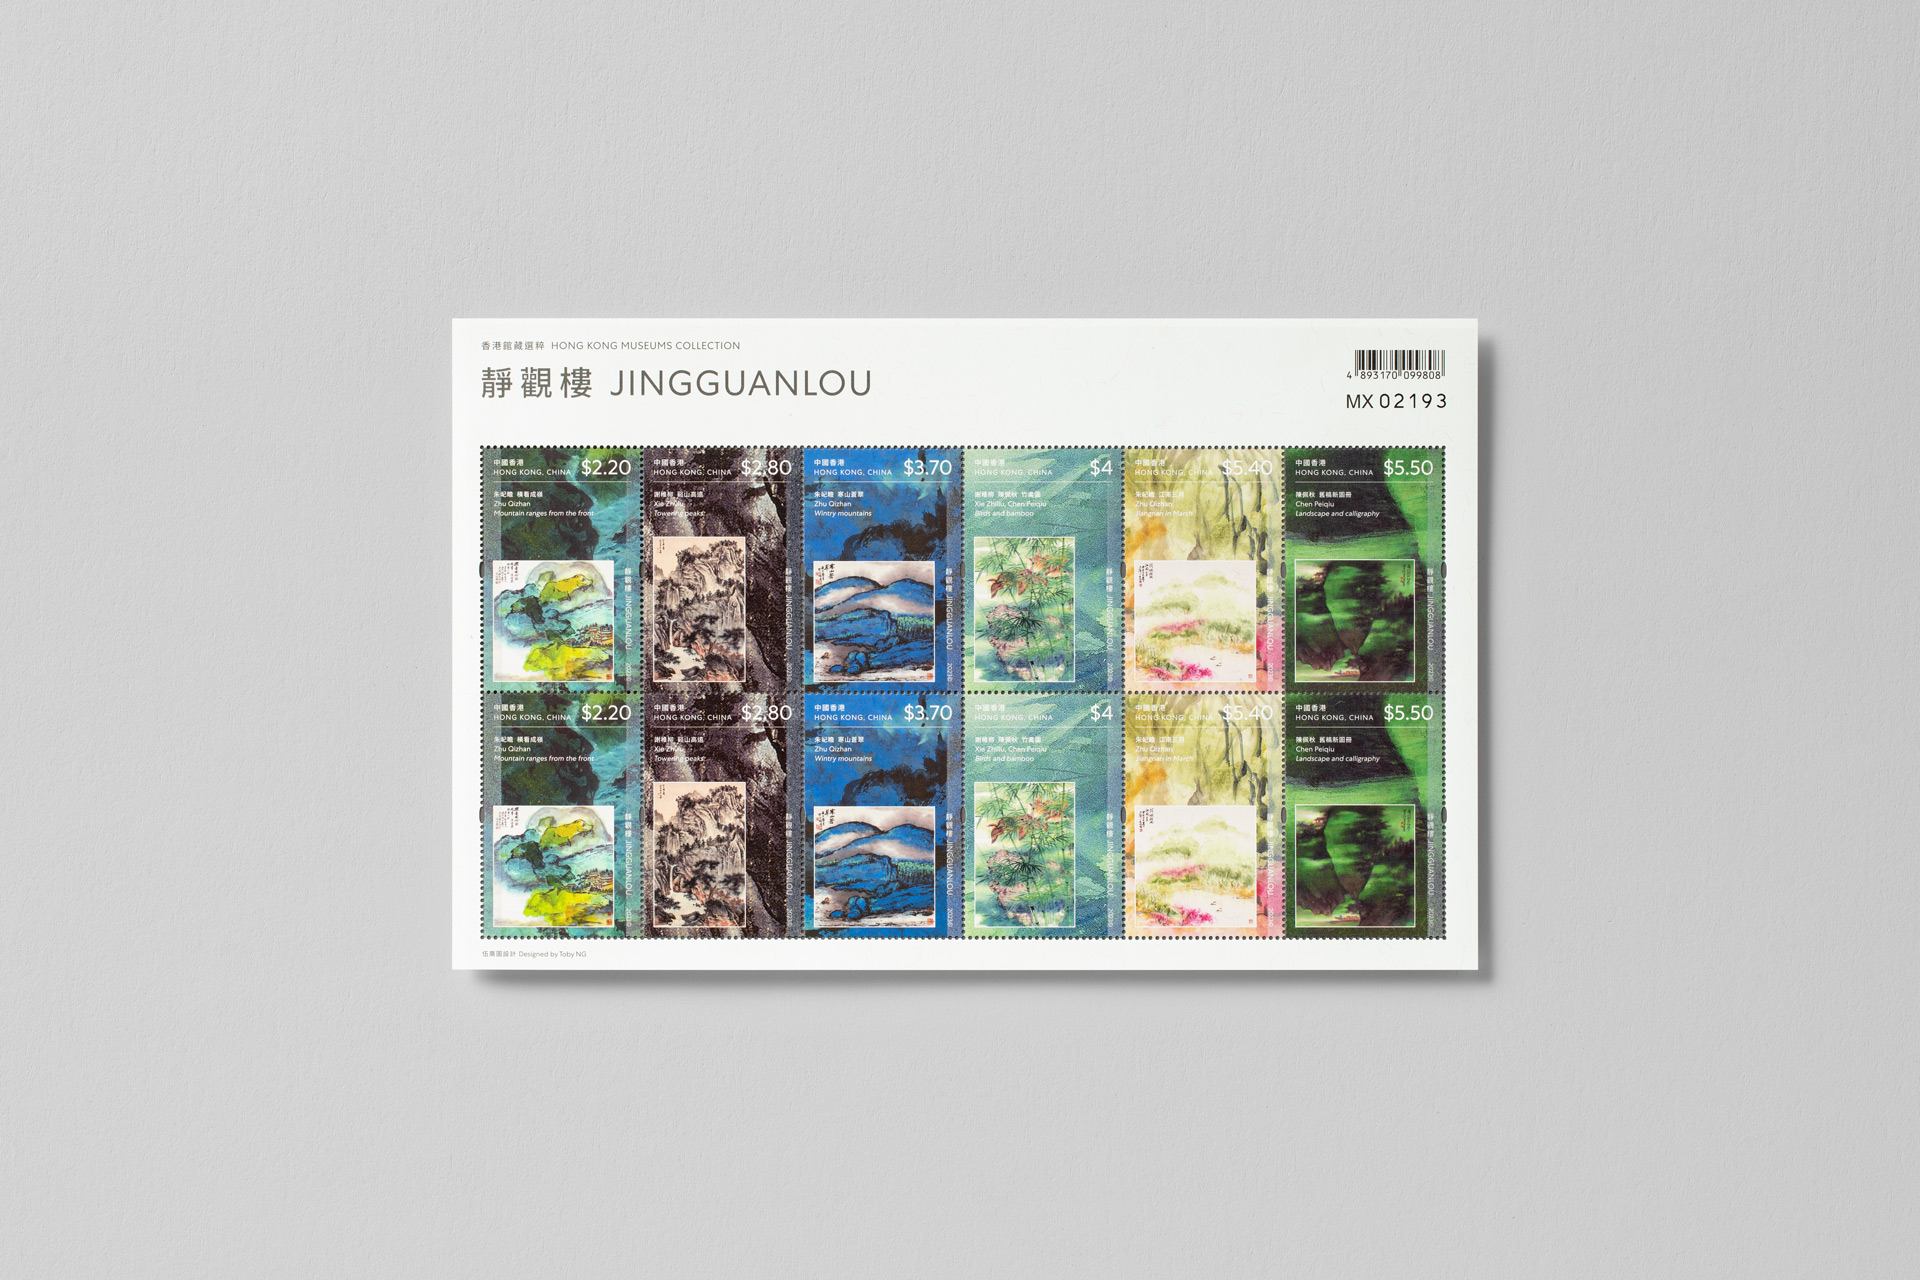 hong-kong-museums-collection-jingguanlou-stamps_08